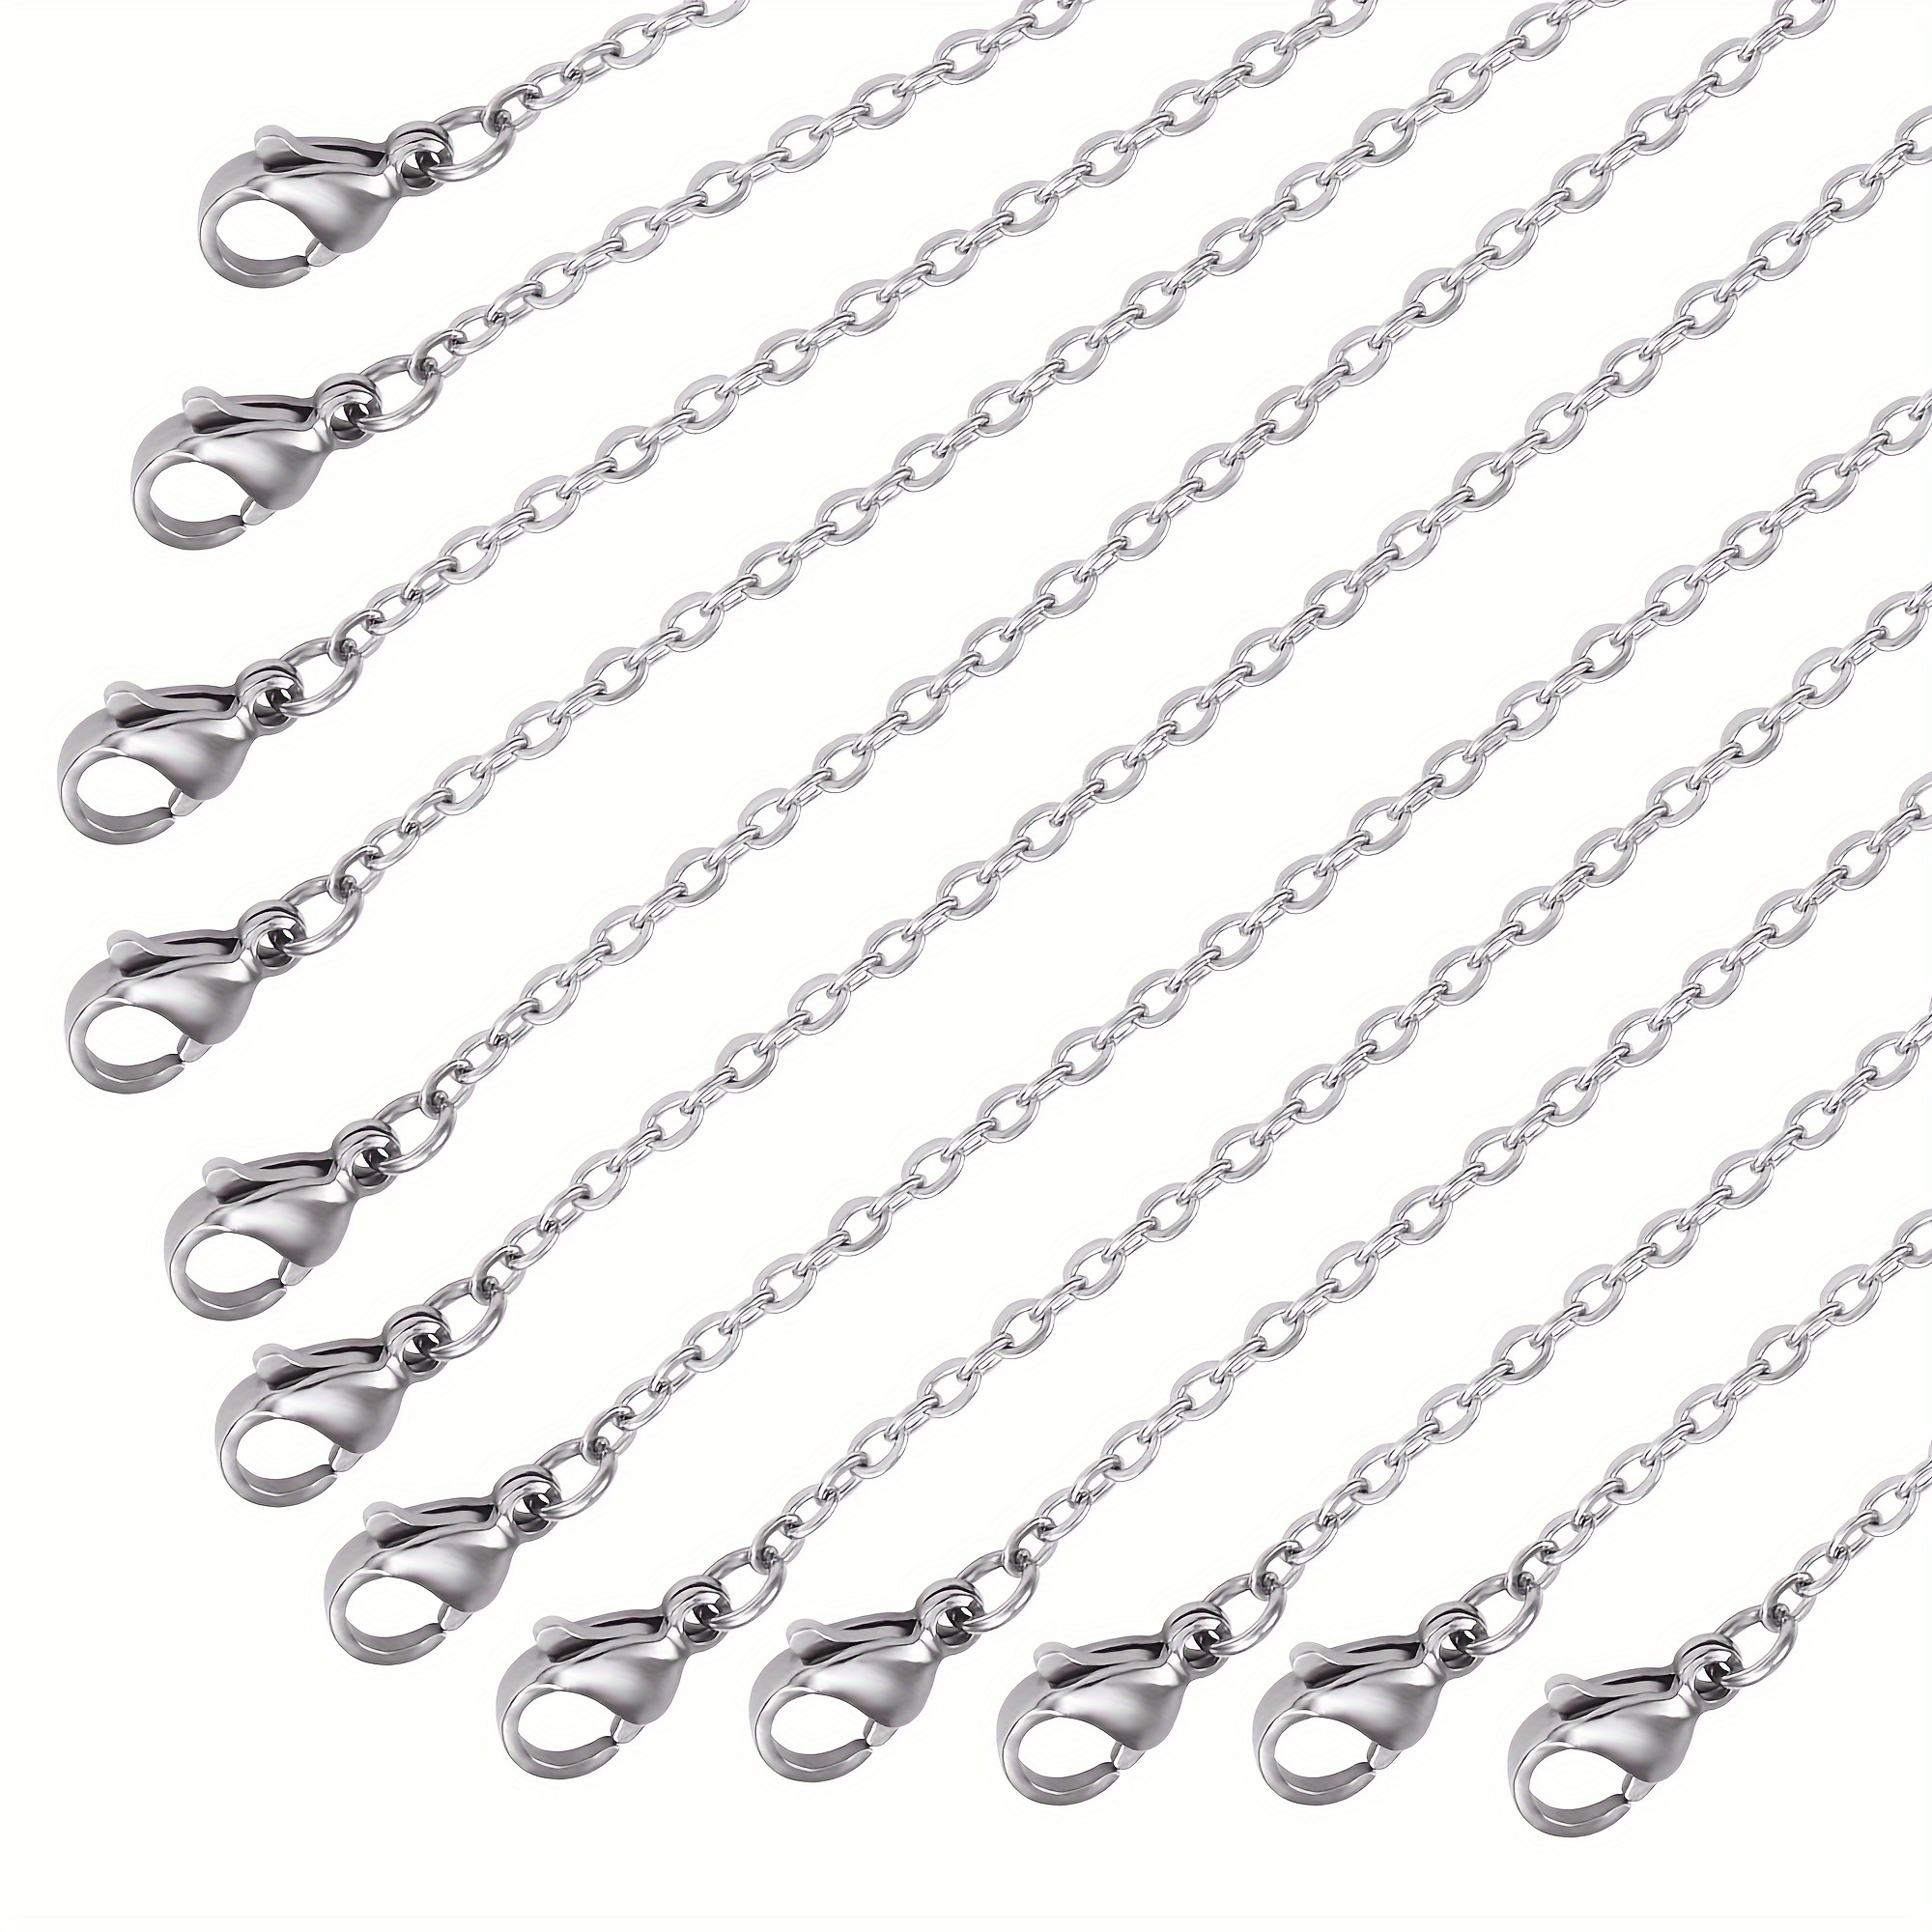 Confezione da 50 catene per collane placcate in argento alla rinfusa, per  realizzare gioielli